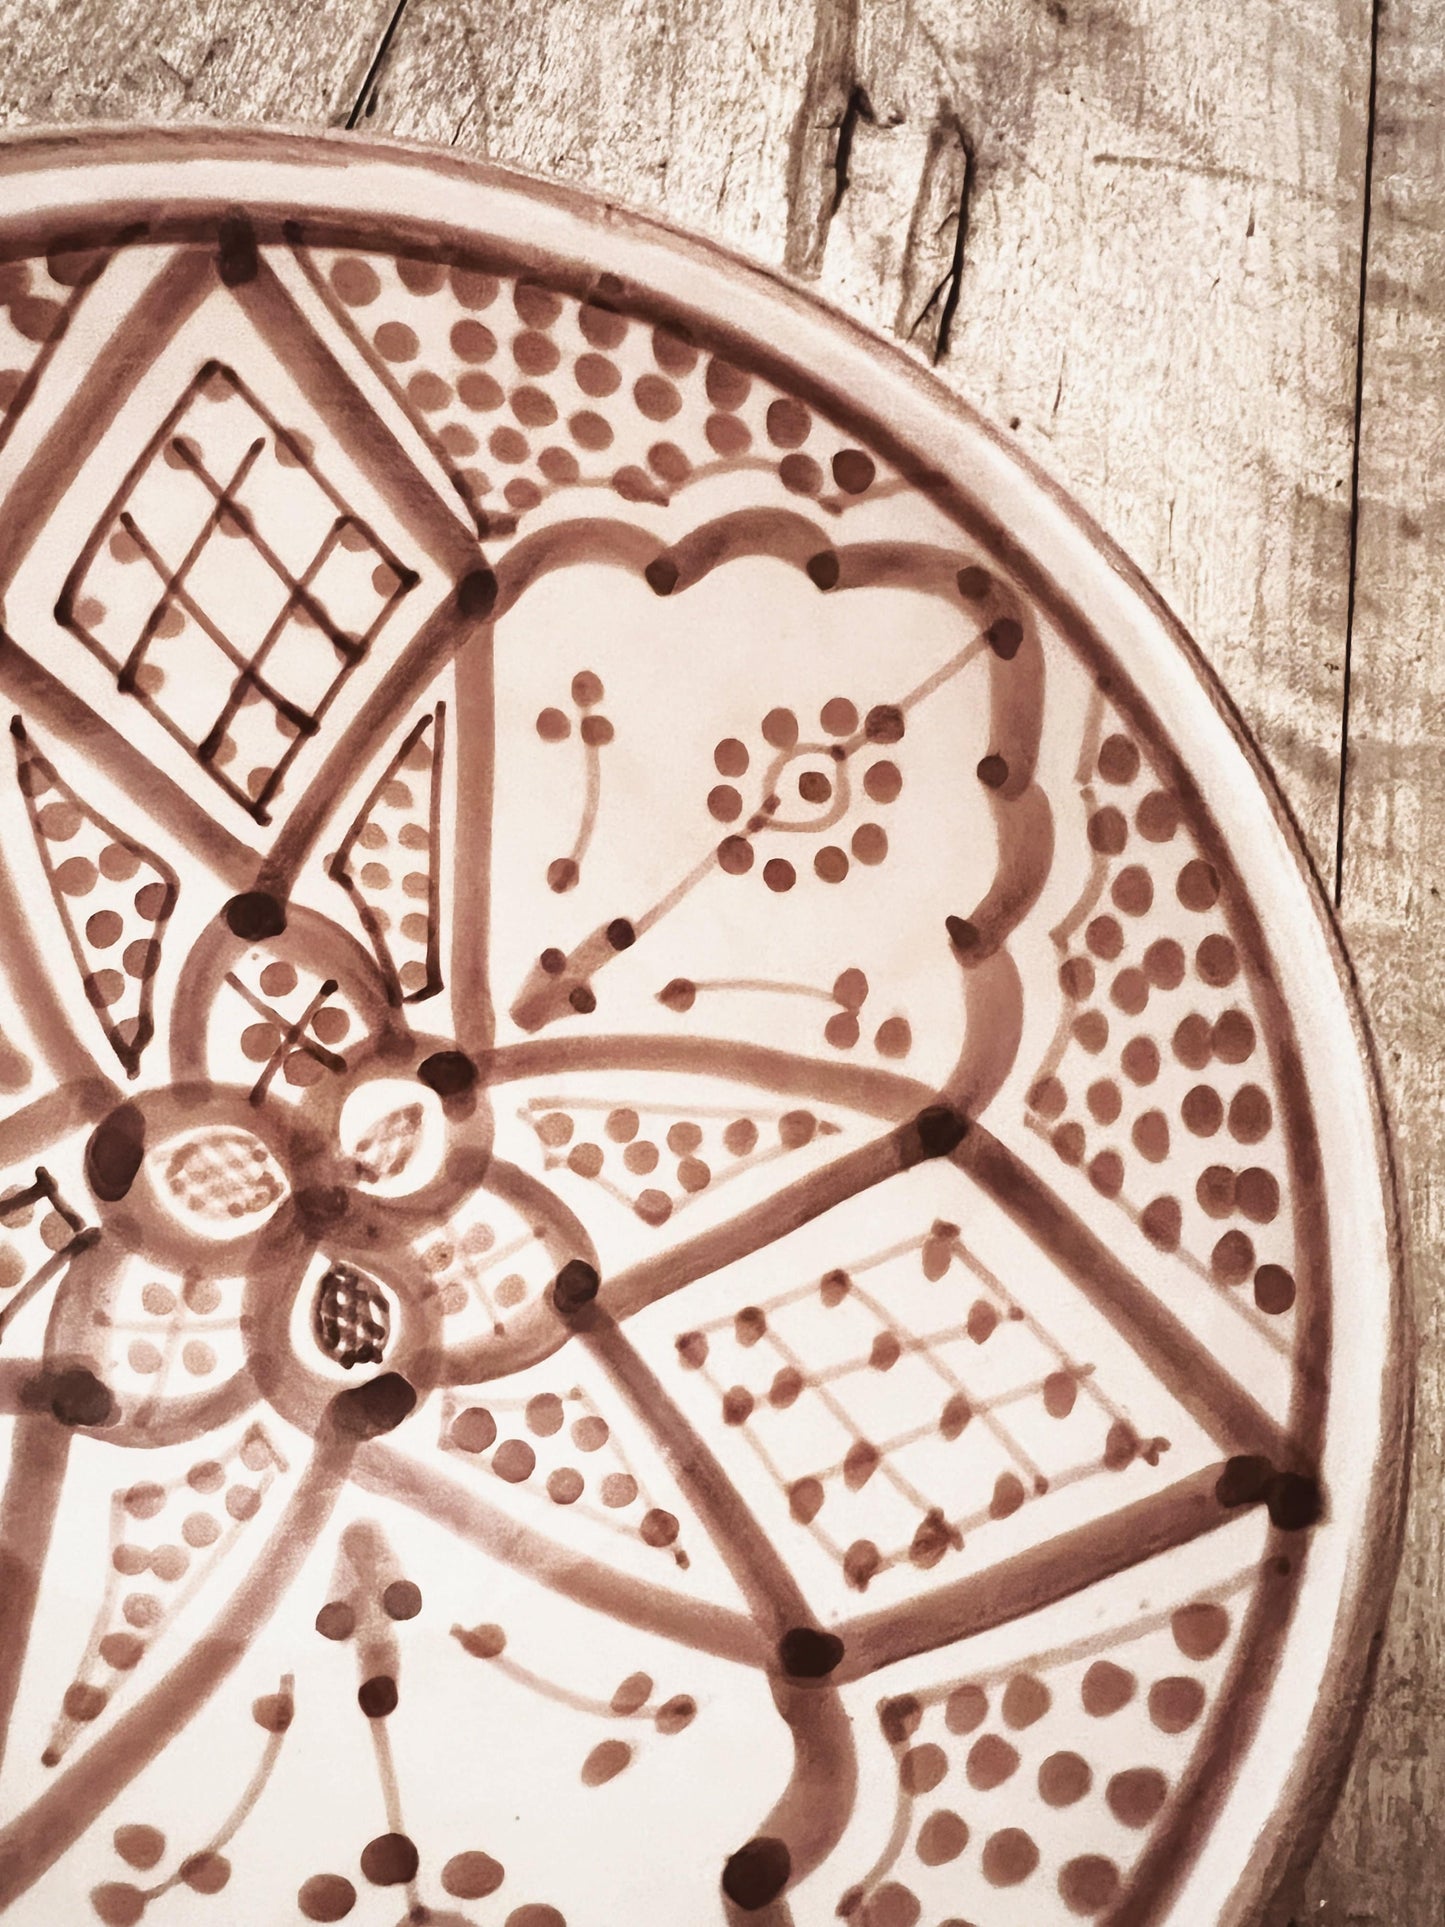 En vakker håndlaget og håndmalt skål i keramikk fra Marokko med mønster i fargen mocca.Server dine favorittretter og overrask dine gjester med dette unike serviset fra Moroccan Home.